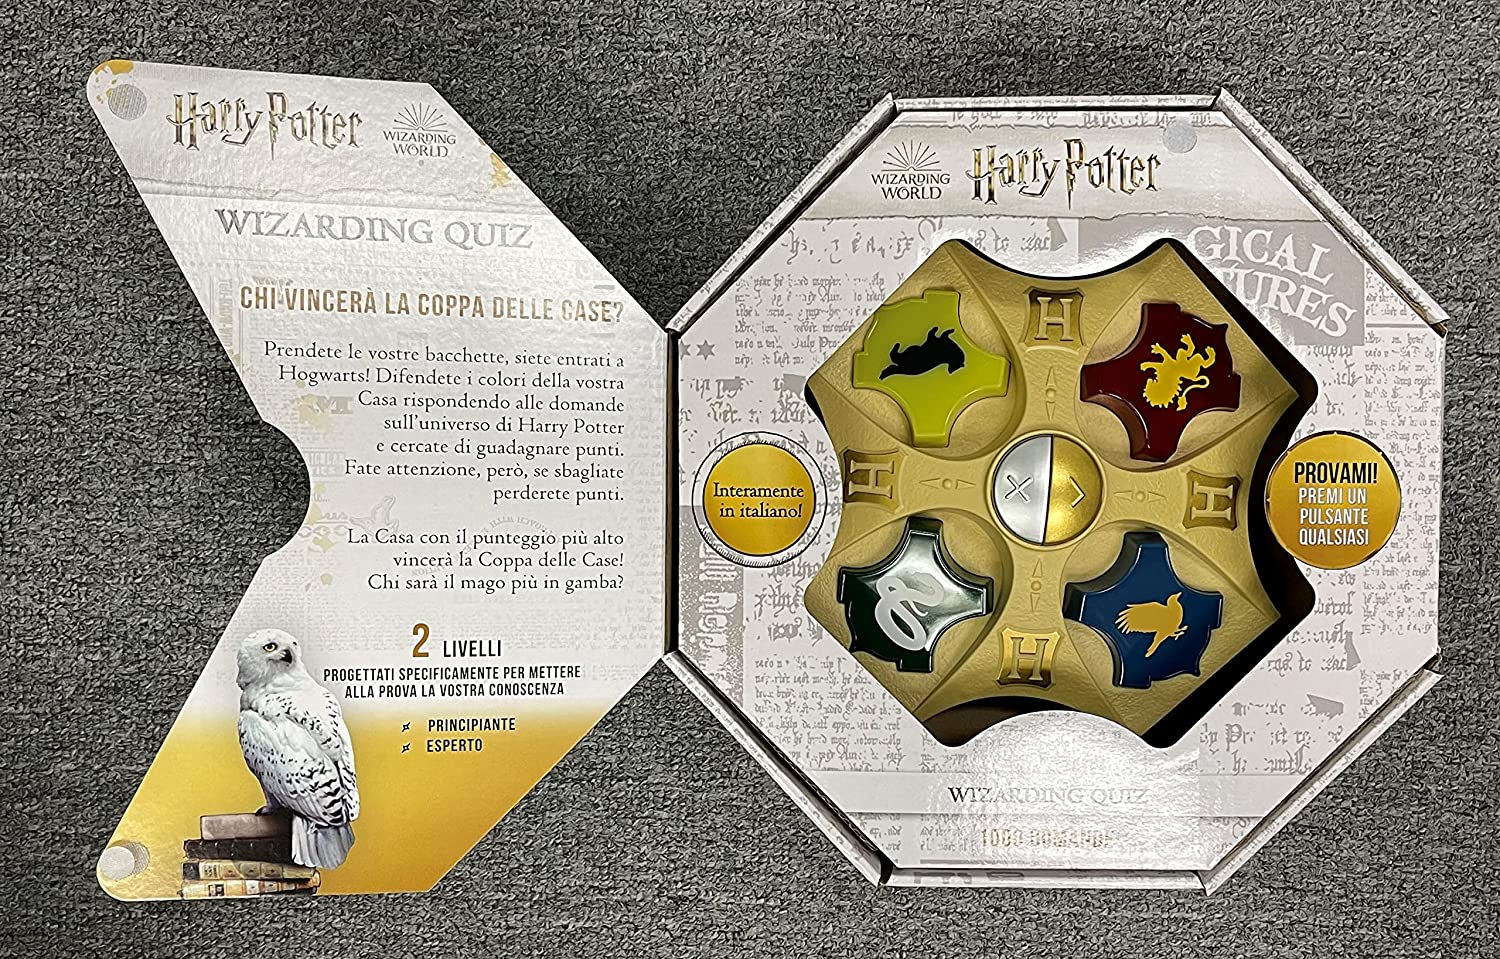 Harry potter wizarding quiz - Harry Potter